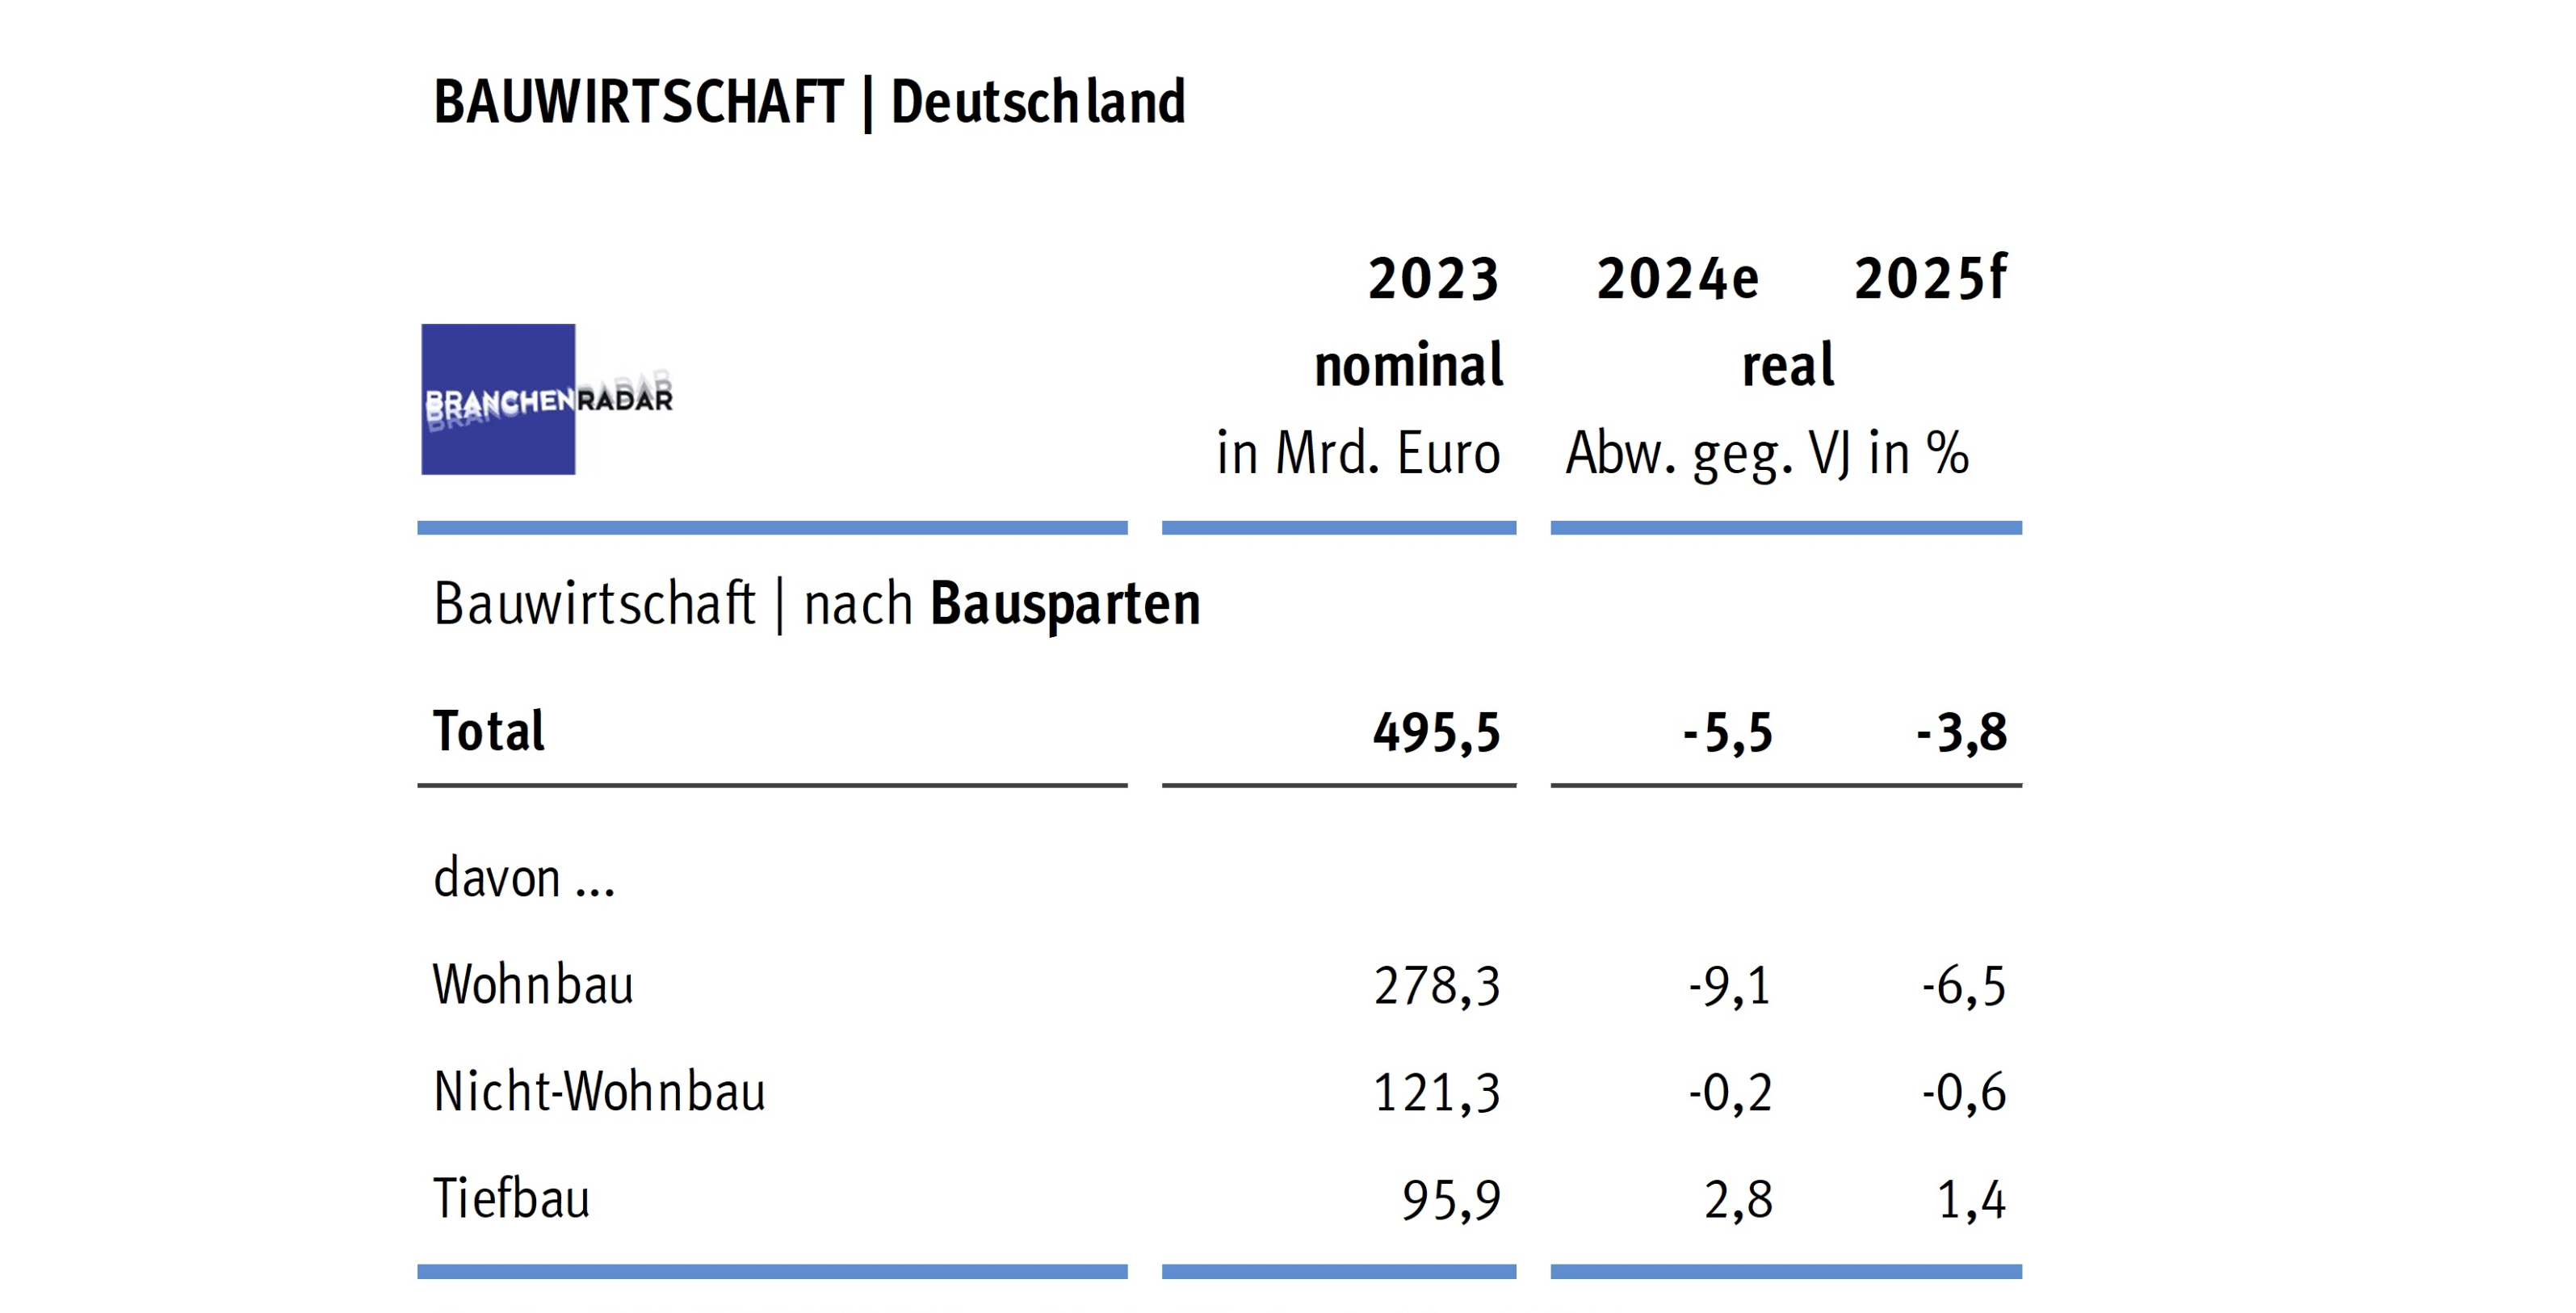 Bauwirtschaft nach Bausparten in Deutschland | Abweichung zu Vorjahrespreisen. Quelle: Brachenradar